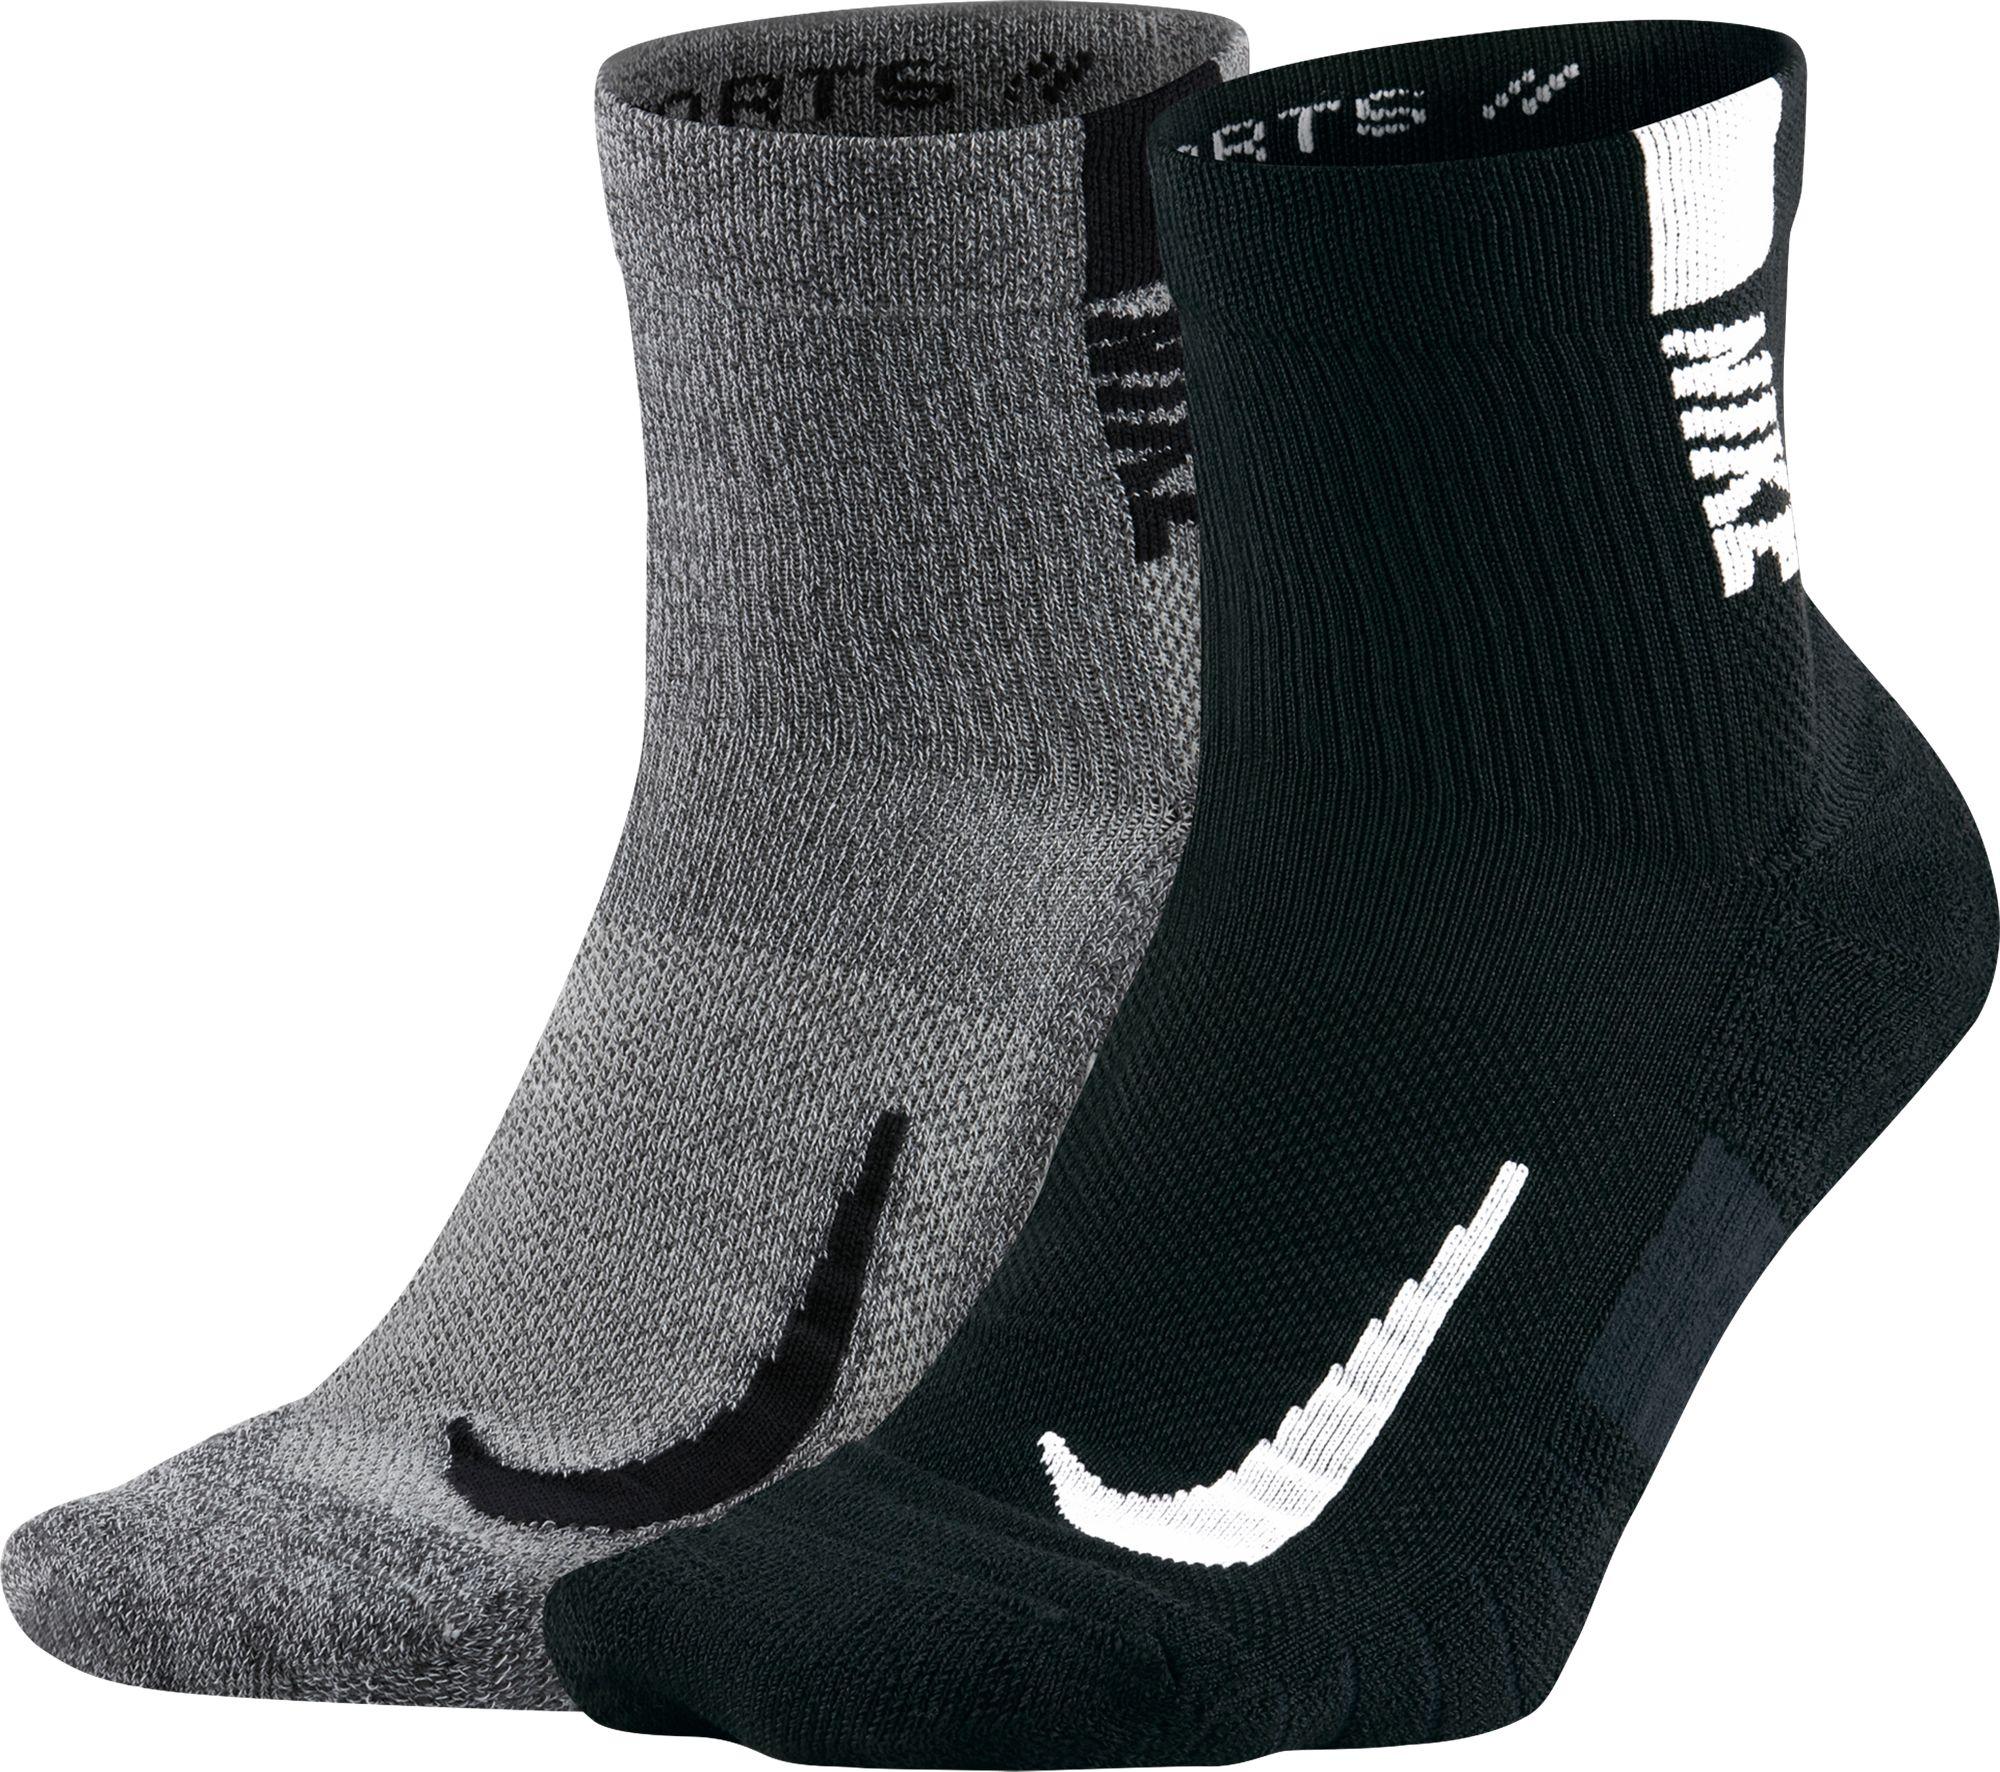 Nike Running Ankle Socks - 2 Pack in Grey/Black (Black) for Men - Lyst